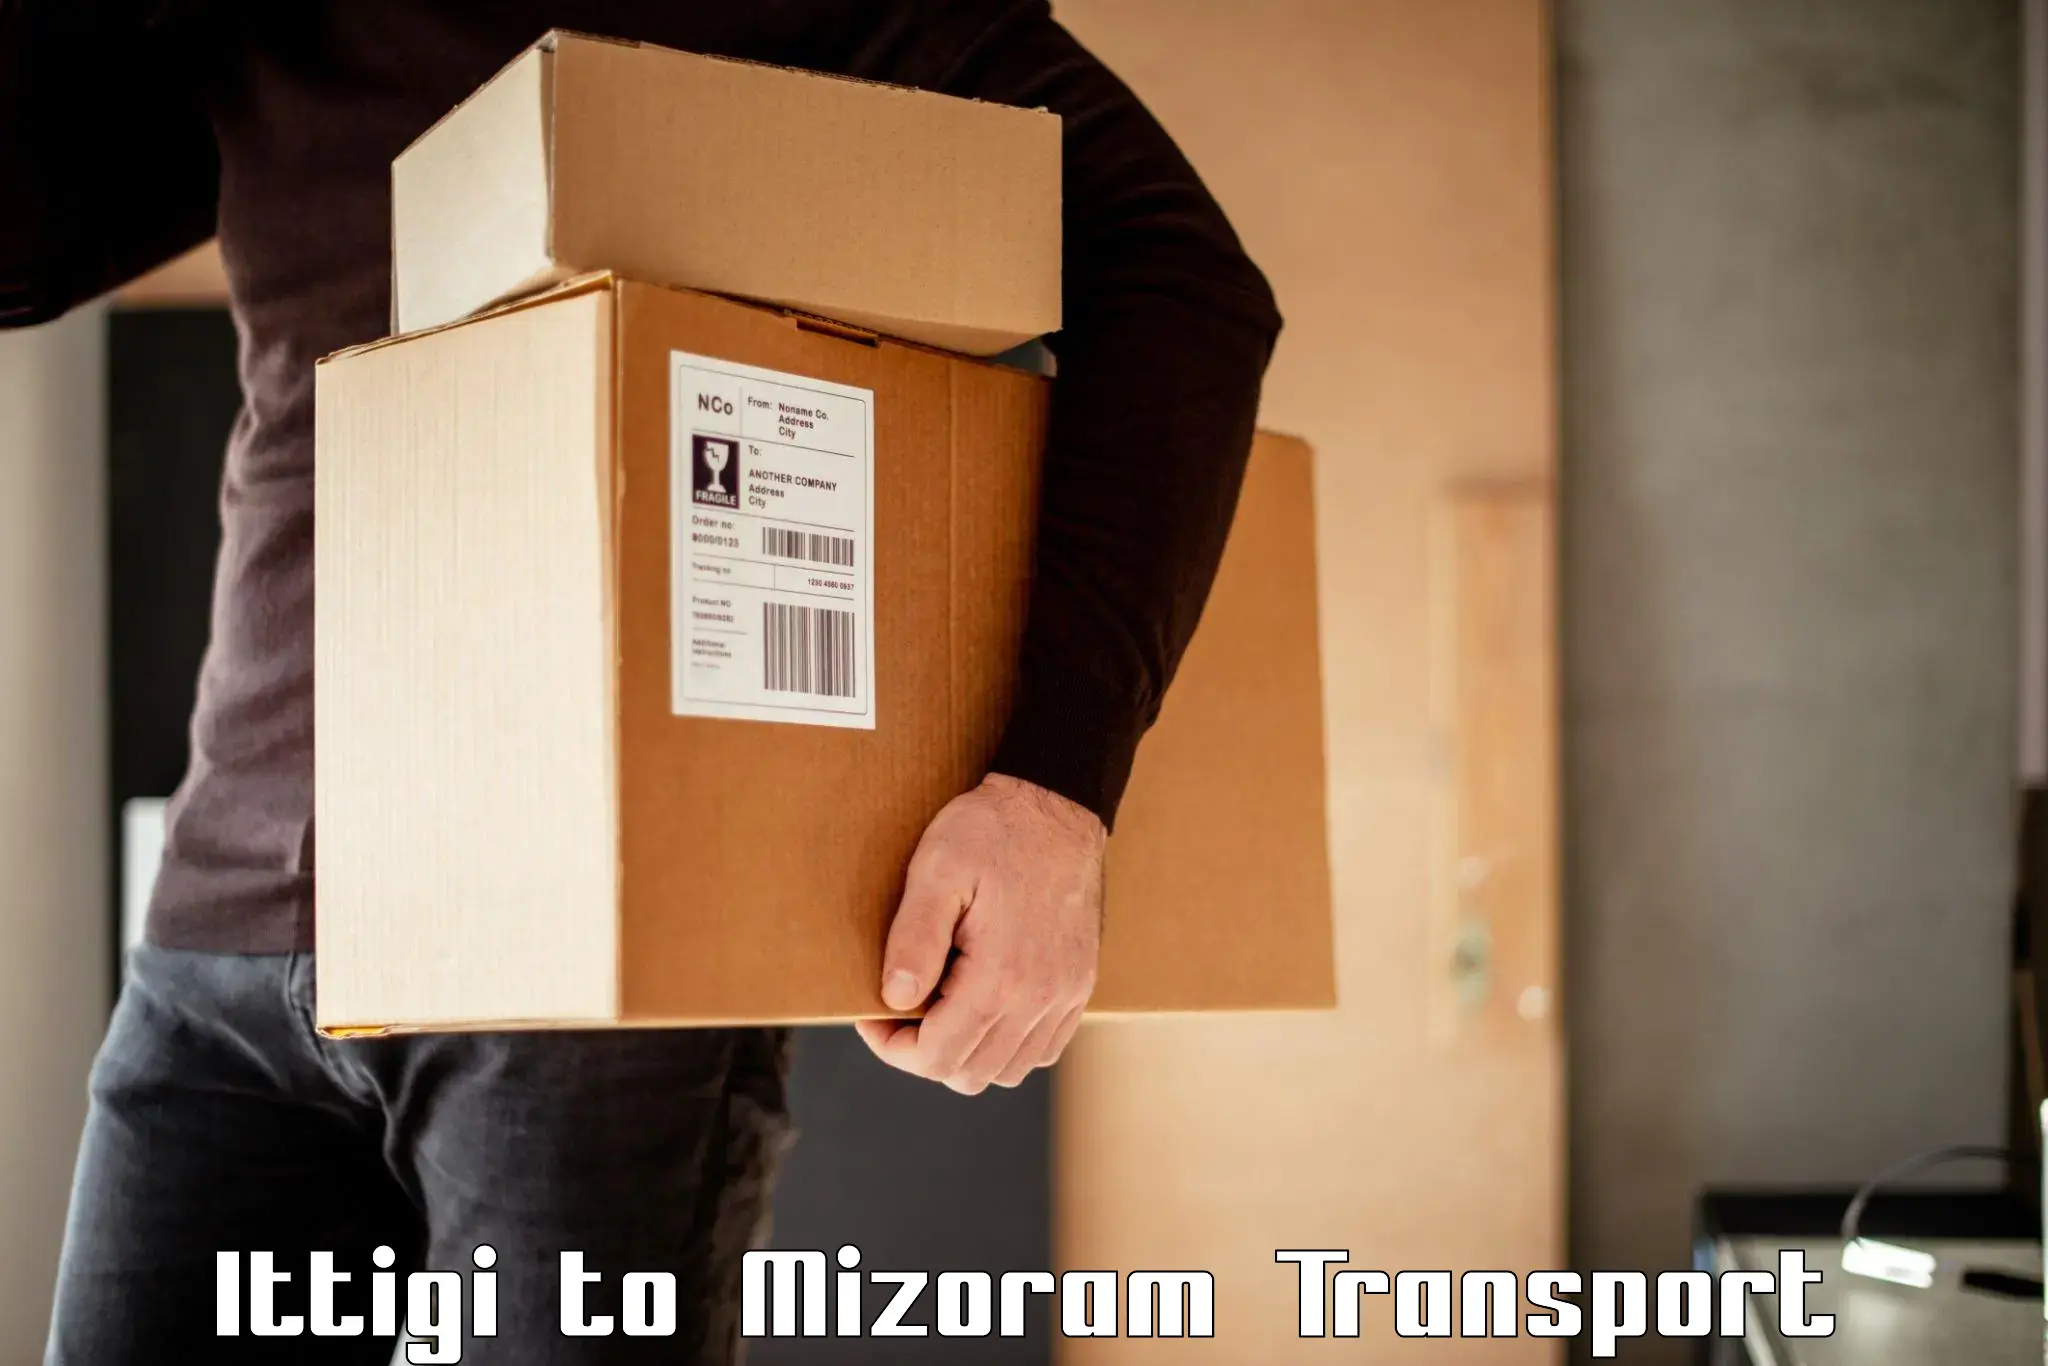 Cargo transportation services Ittigi to Aizawl